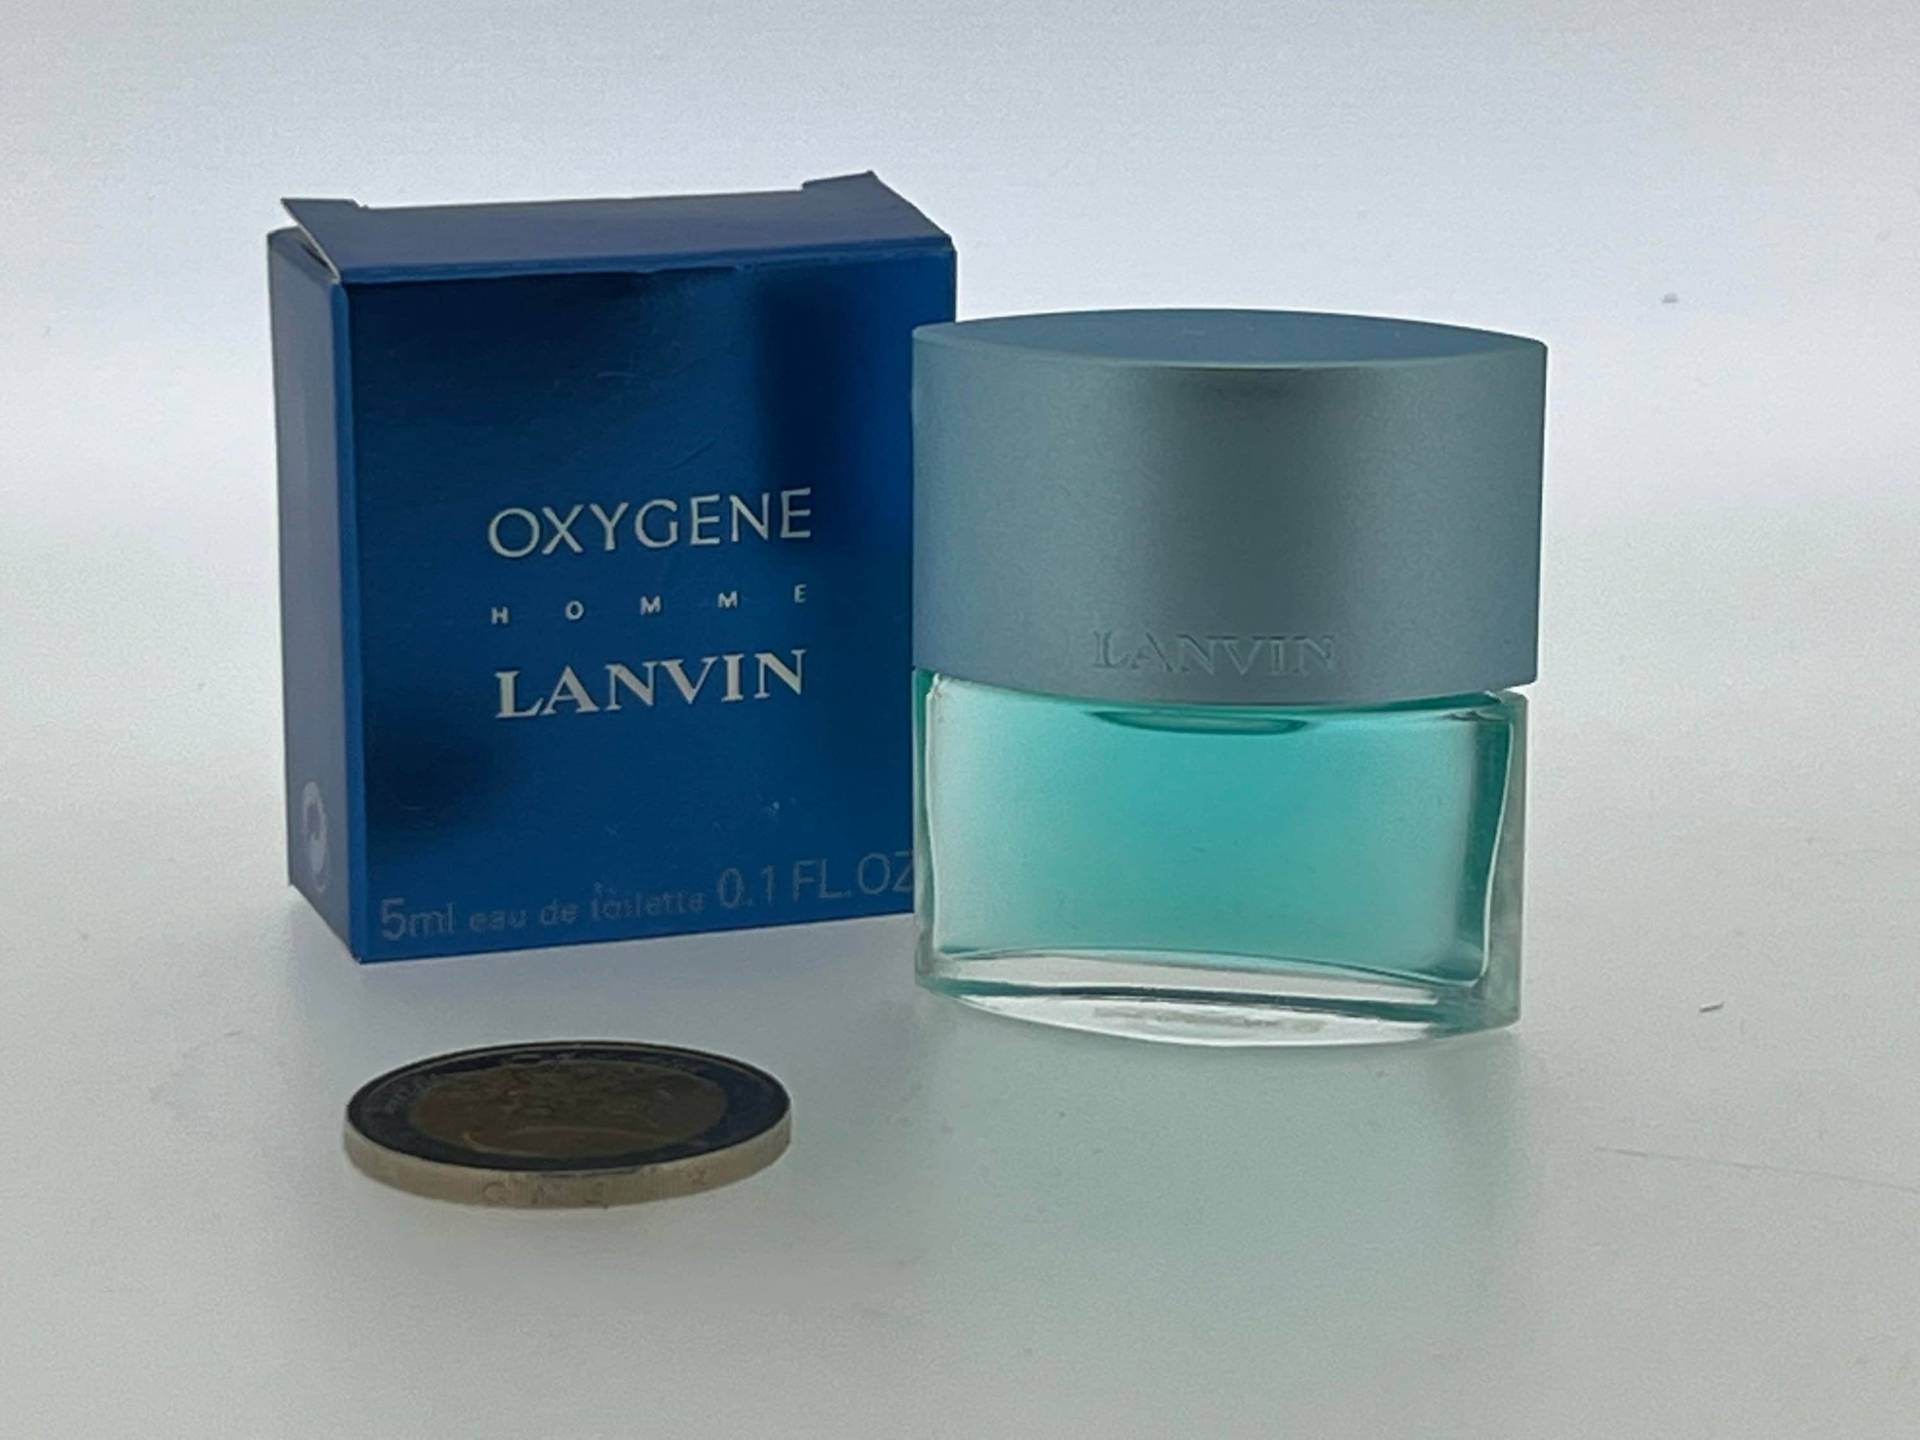 Miniatur Oxygen Man Lanvin 2001 Eau De Toilette 5 Ml von VintagGlamour